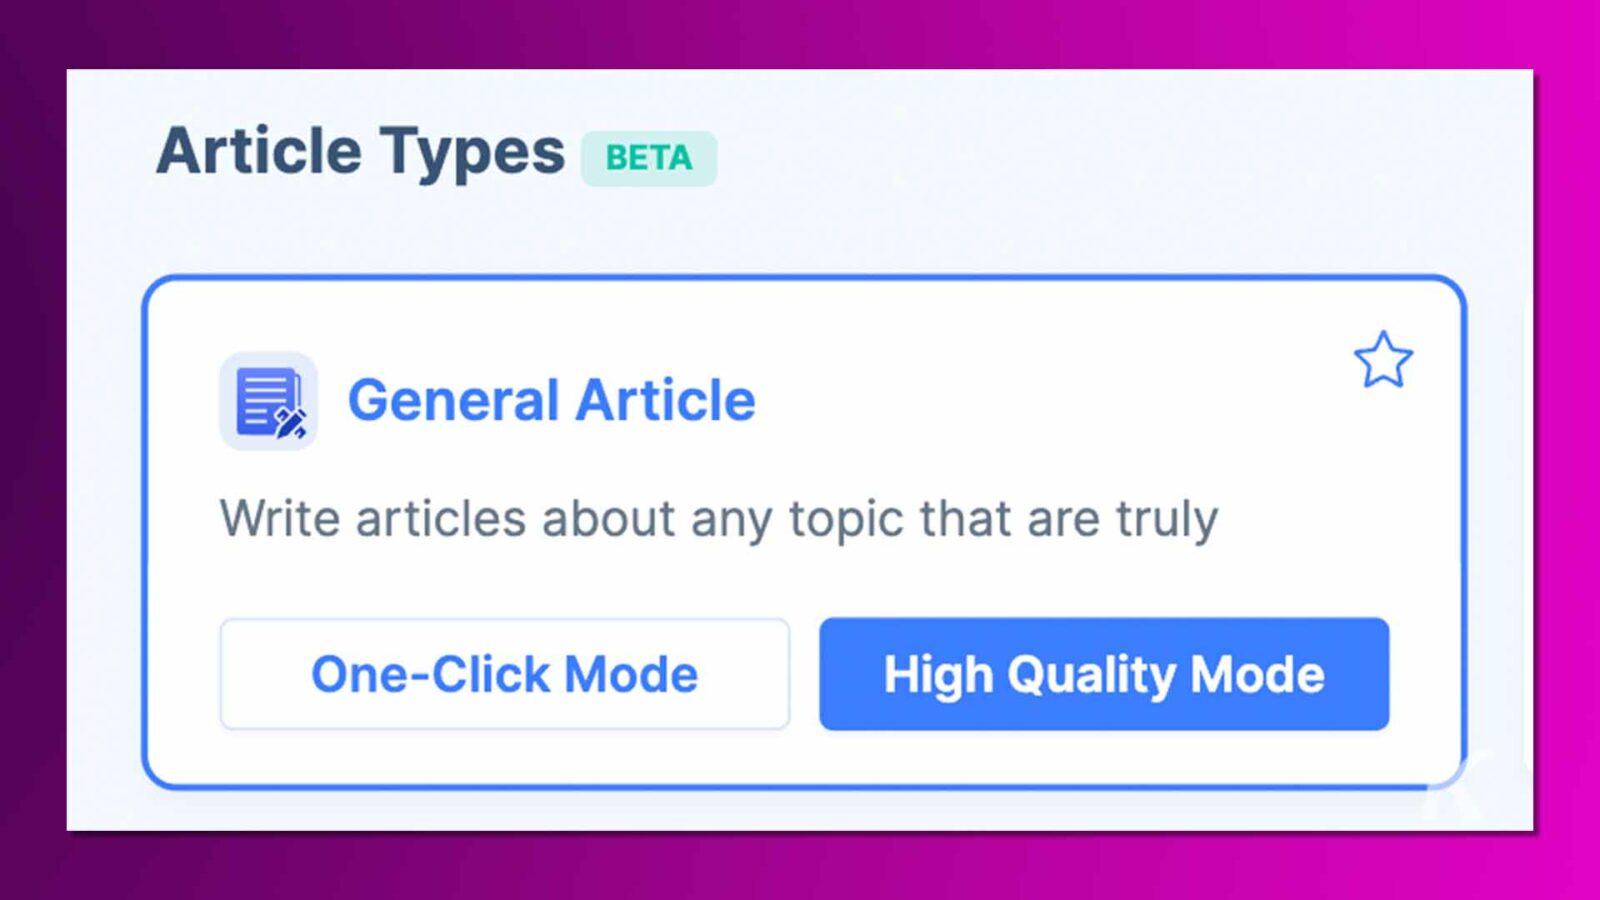 この画像は、「一般記事」オプションが強調表示された「記事タイプ」というラベルの付いたデジタル インターフェイスを示しています。記事作成のための「ワンクリックモード」と「高画質モード」を提供します。